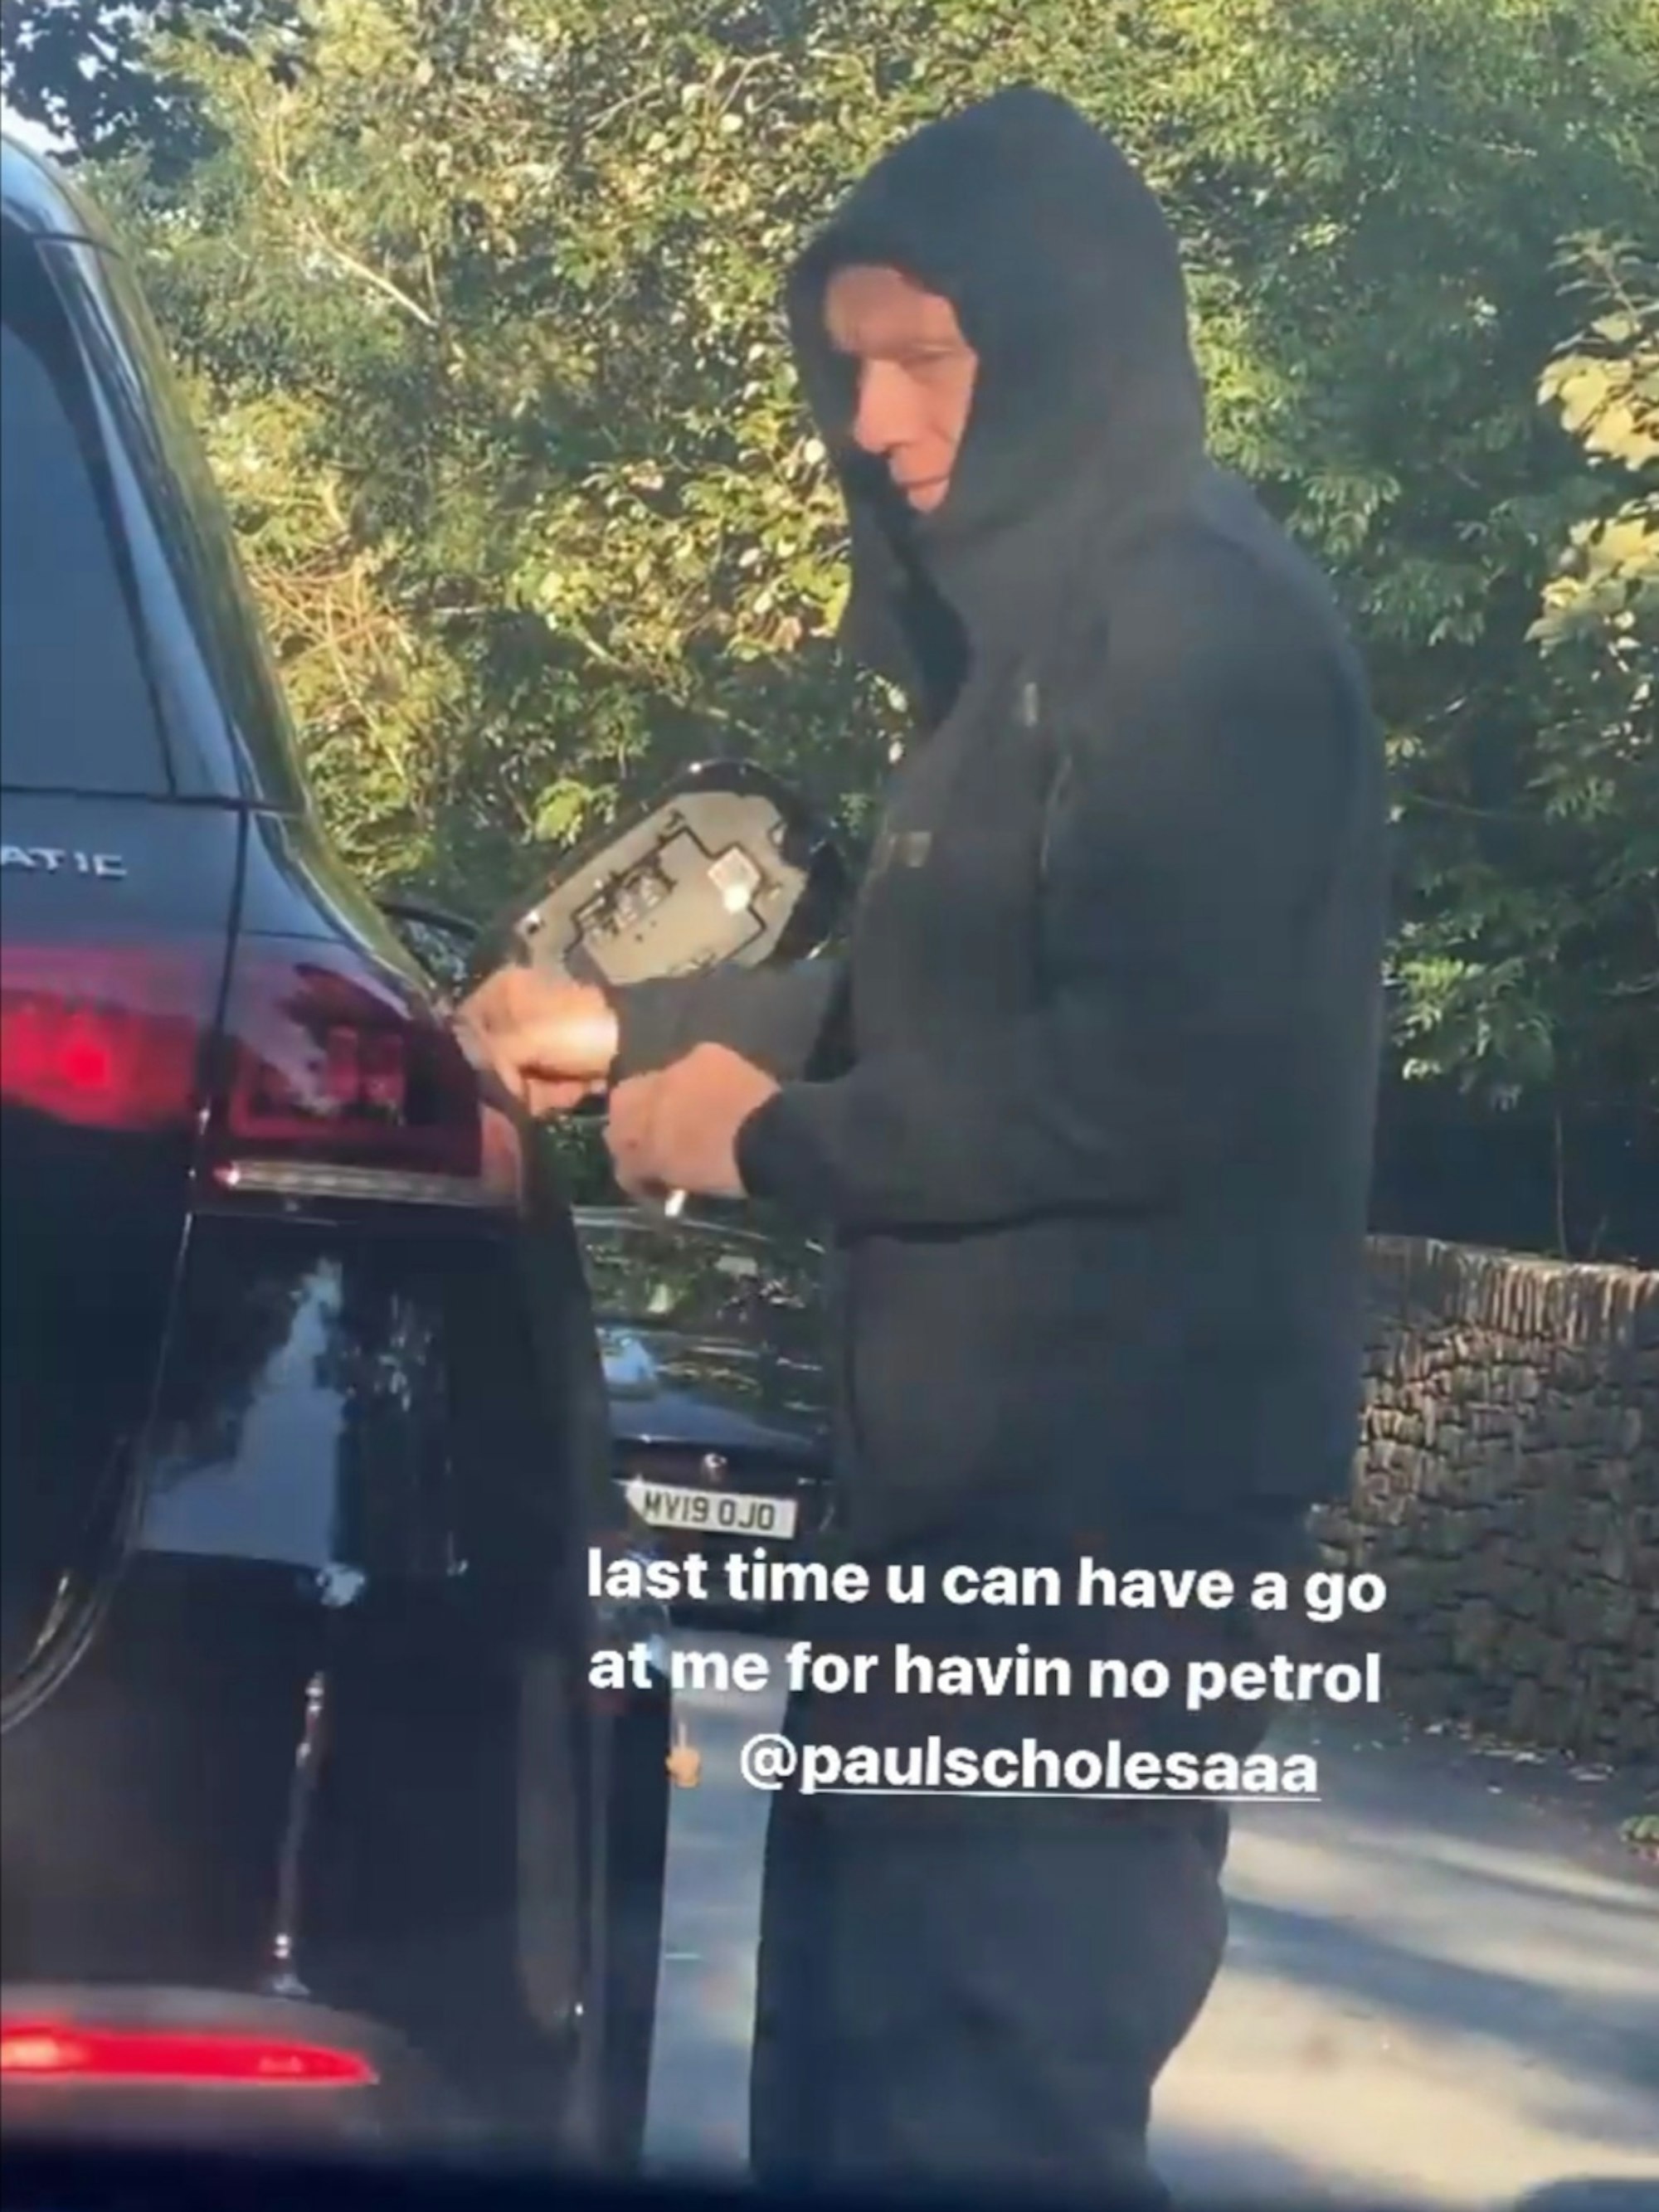 Der frühere englische Nationalspieler Paul Scholes muss am Straßenrand seinen Mercedes aus einem Benzinkanister auffüllen